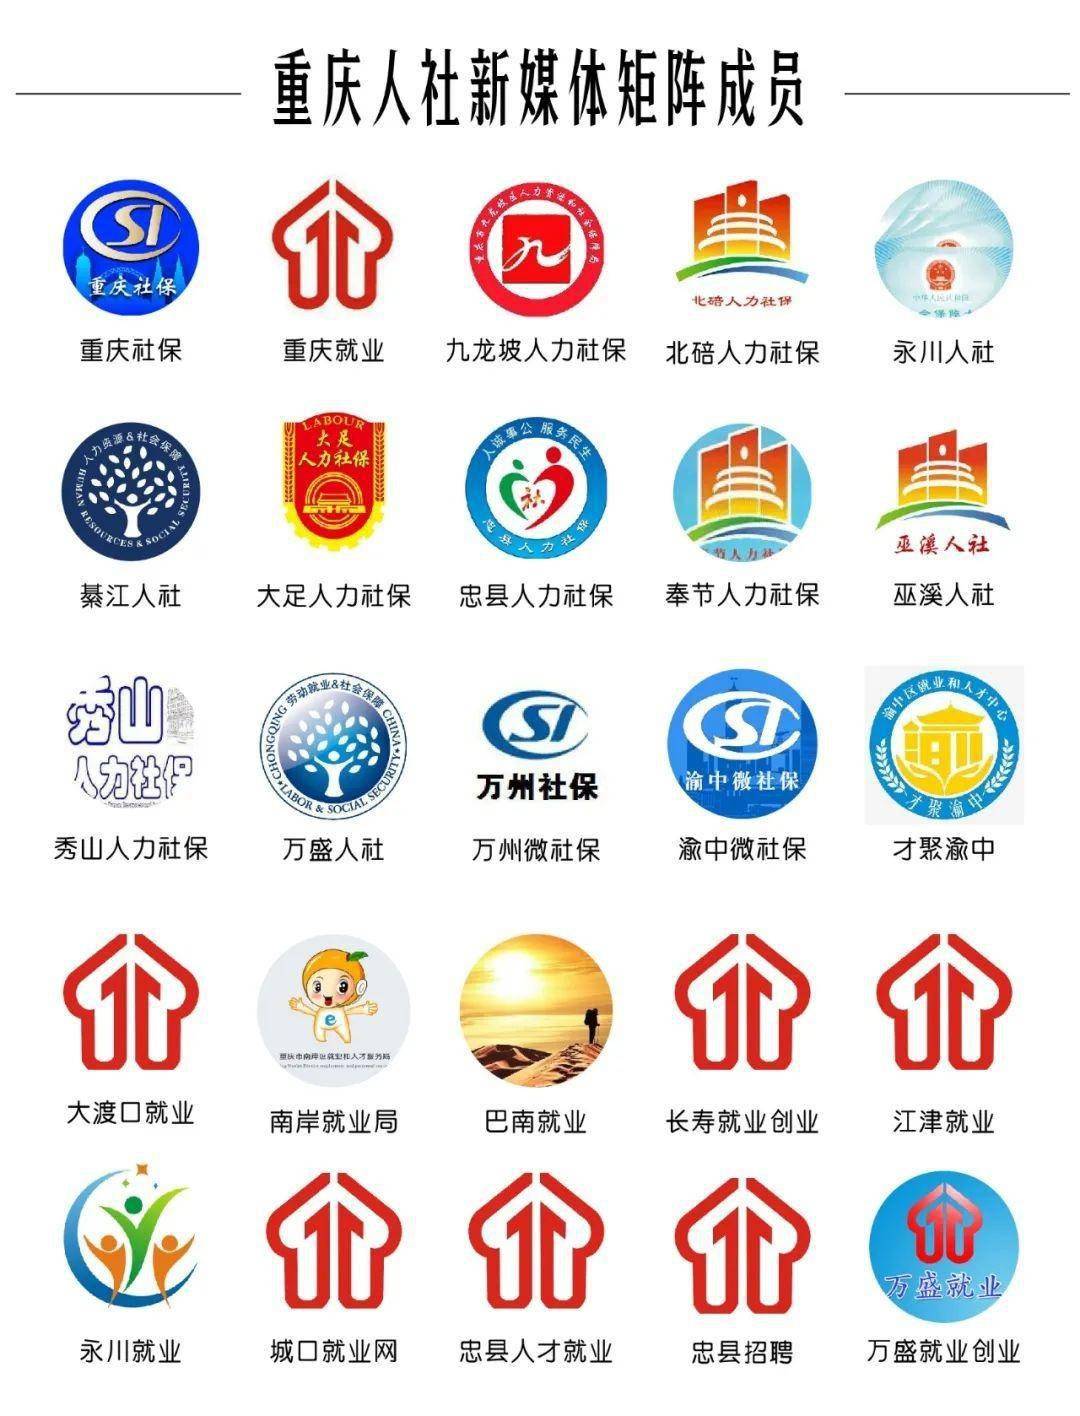 中国社会保险标志图片图片